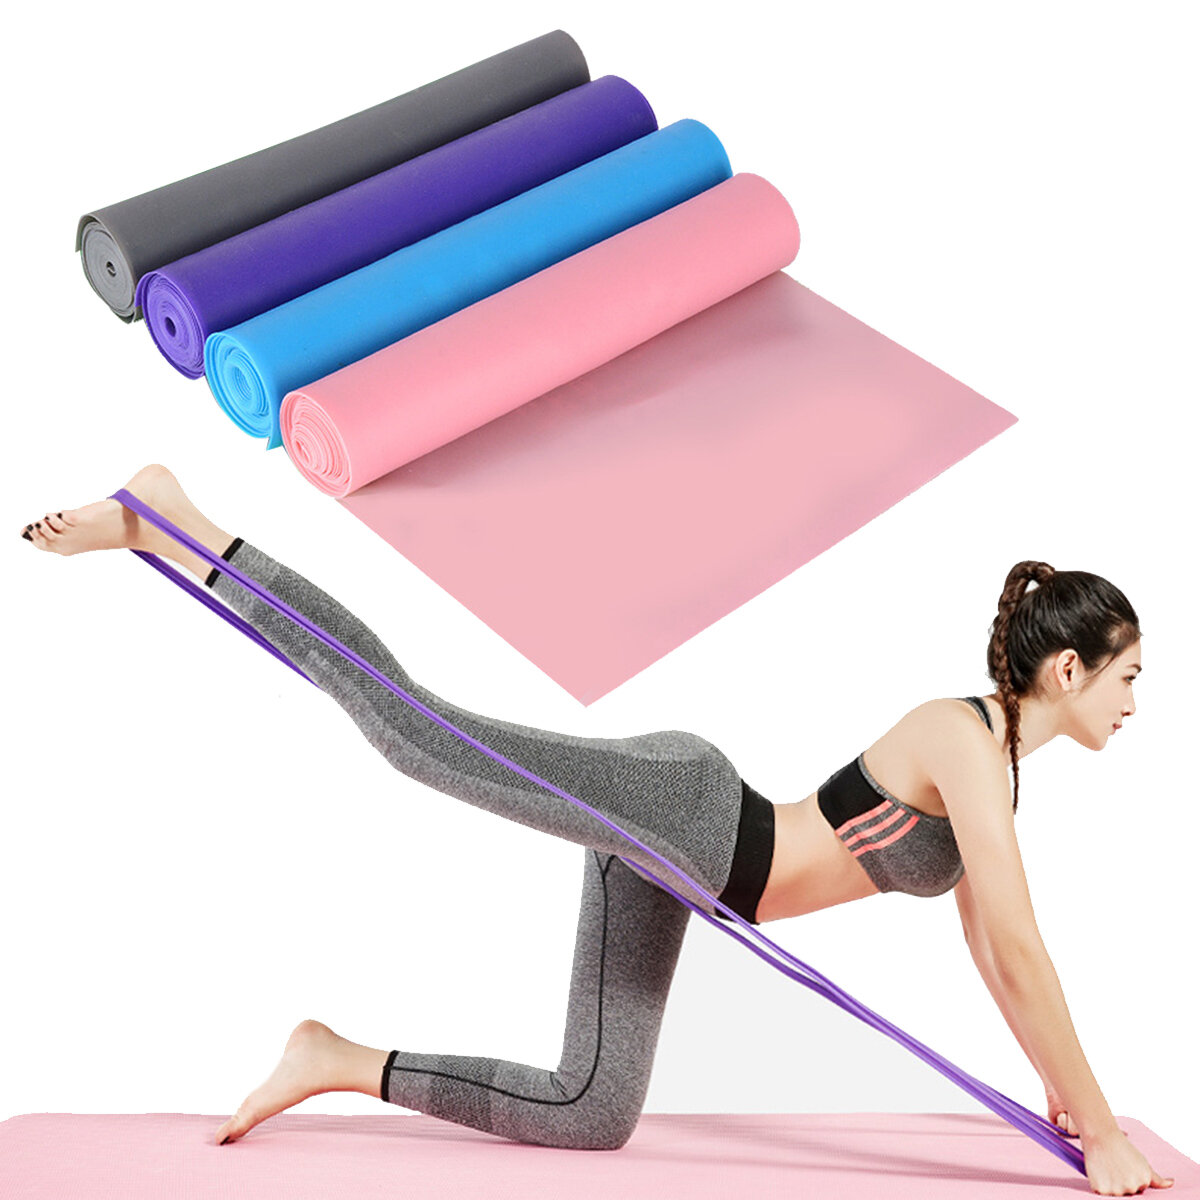 

1.5M Anti-slip Yoga Эластичный эластичный ремешок Пилатес Сопротивление Стандарты Главная Фитнес Спортзал Упражнение Наб